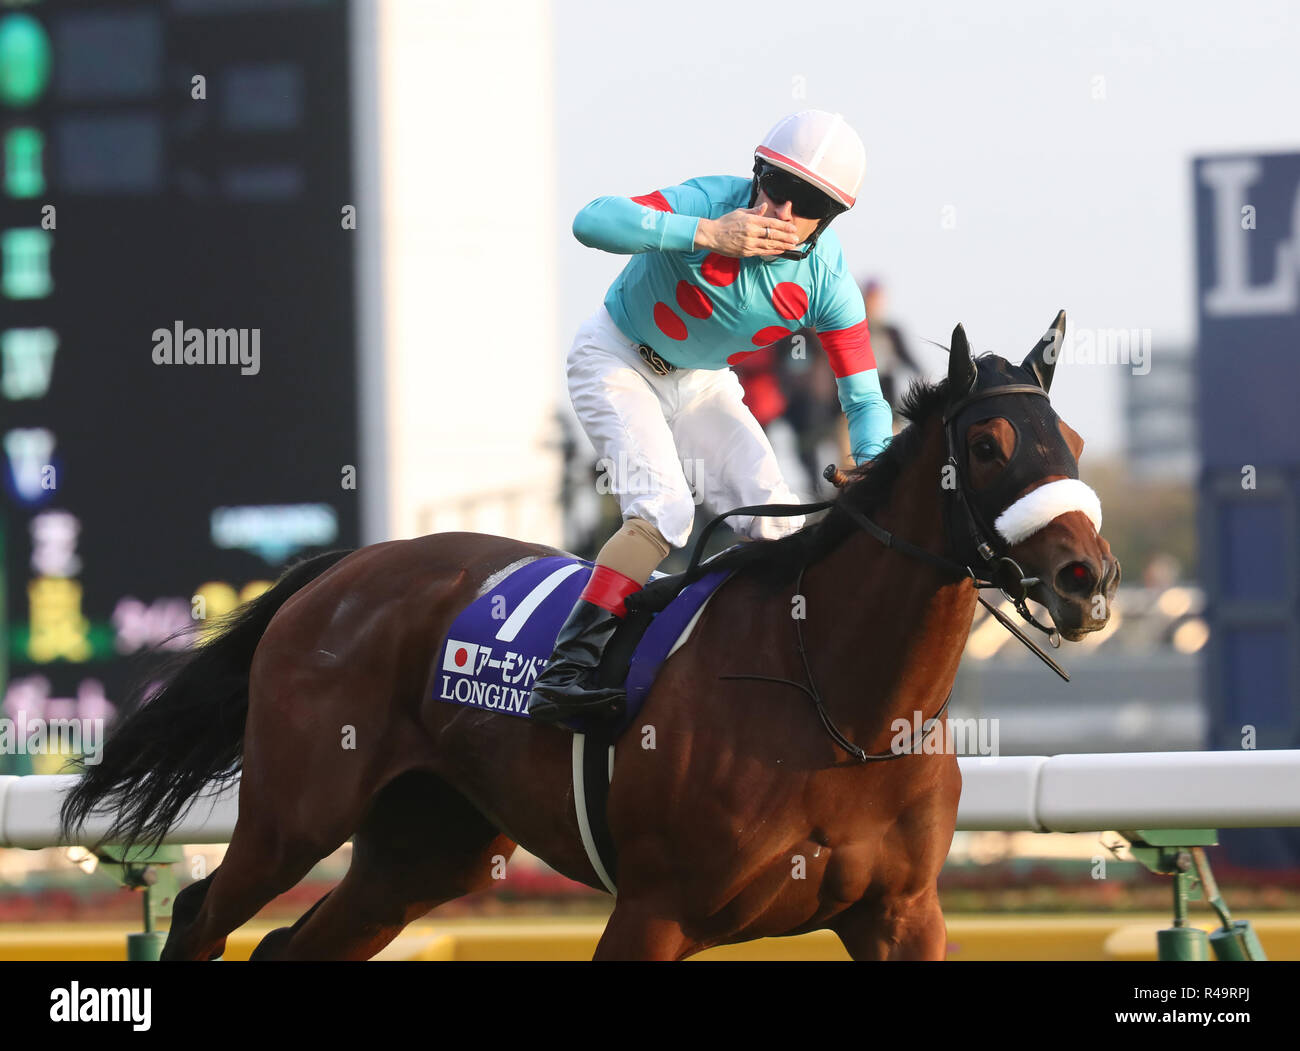 Tokio, Japón. 25 Nov, 2018. Jockey francés Christophe Lemaire equitación  Ojo de Almendra Copa Japón gana la carrera de caballos en el Hipódromo de  Tokio en Tokio el domingo, 25 de noviembre